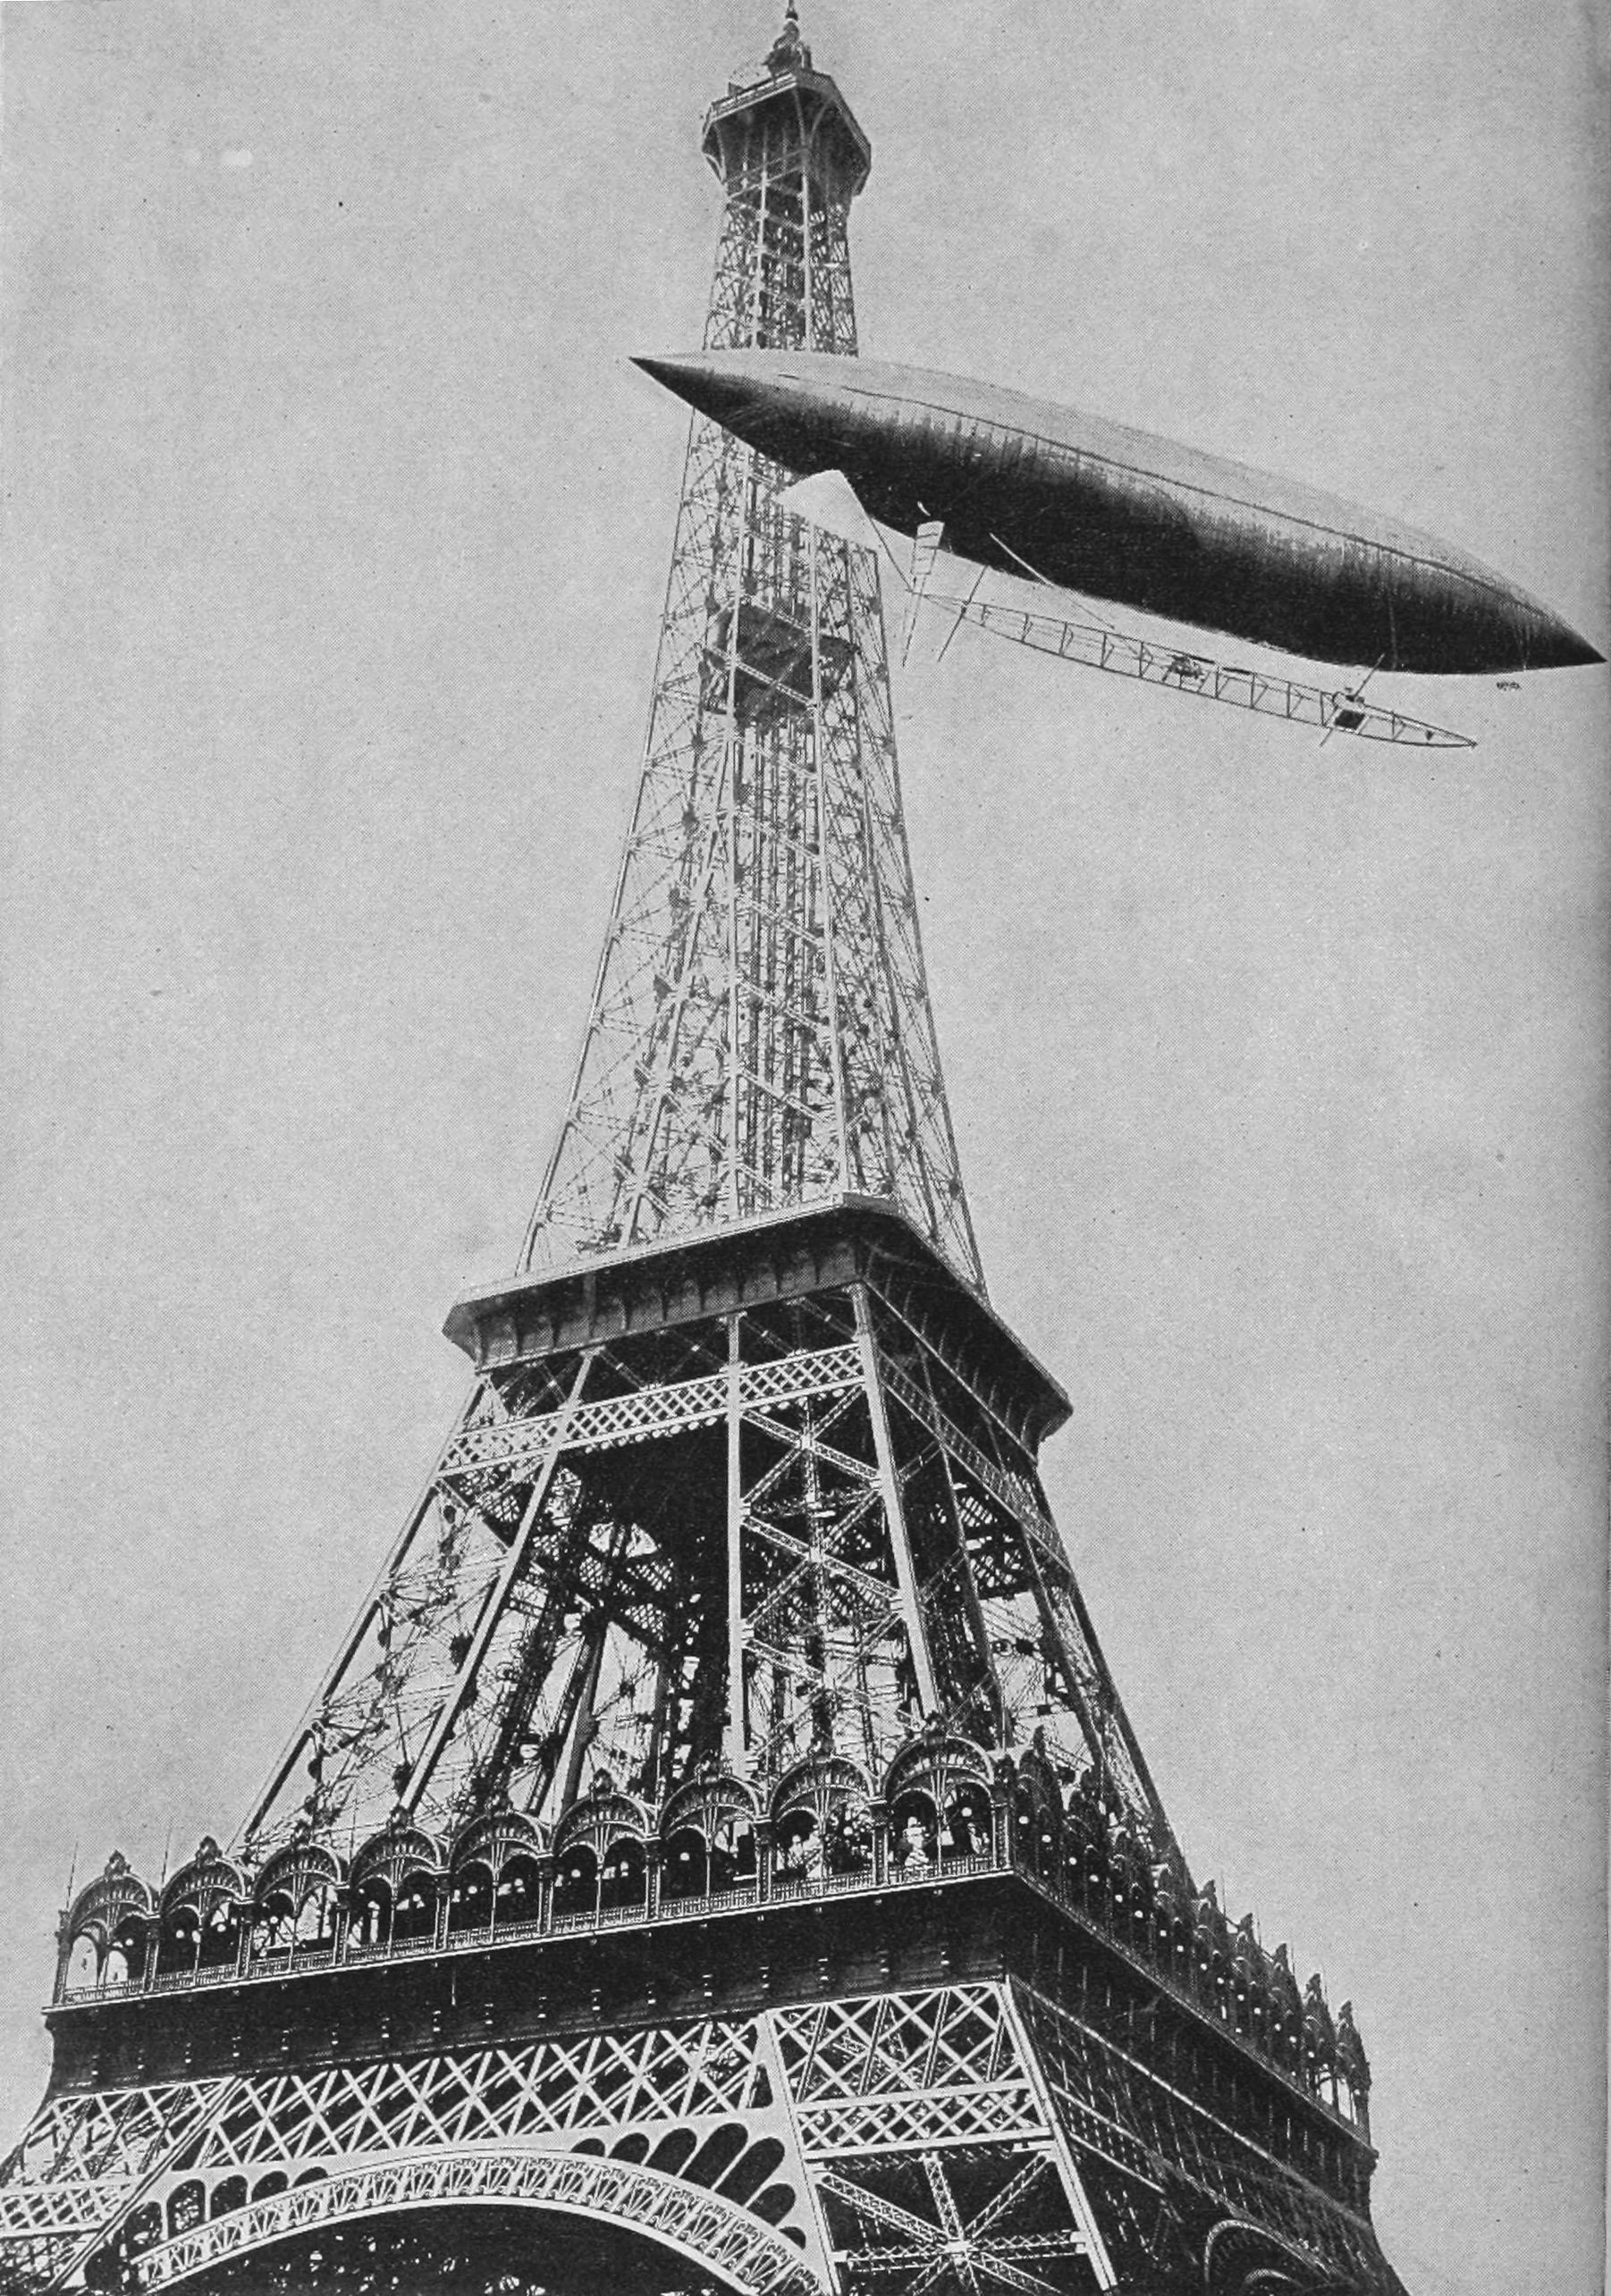 Santos-Dumont flies around the Eiffel Tower.